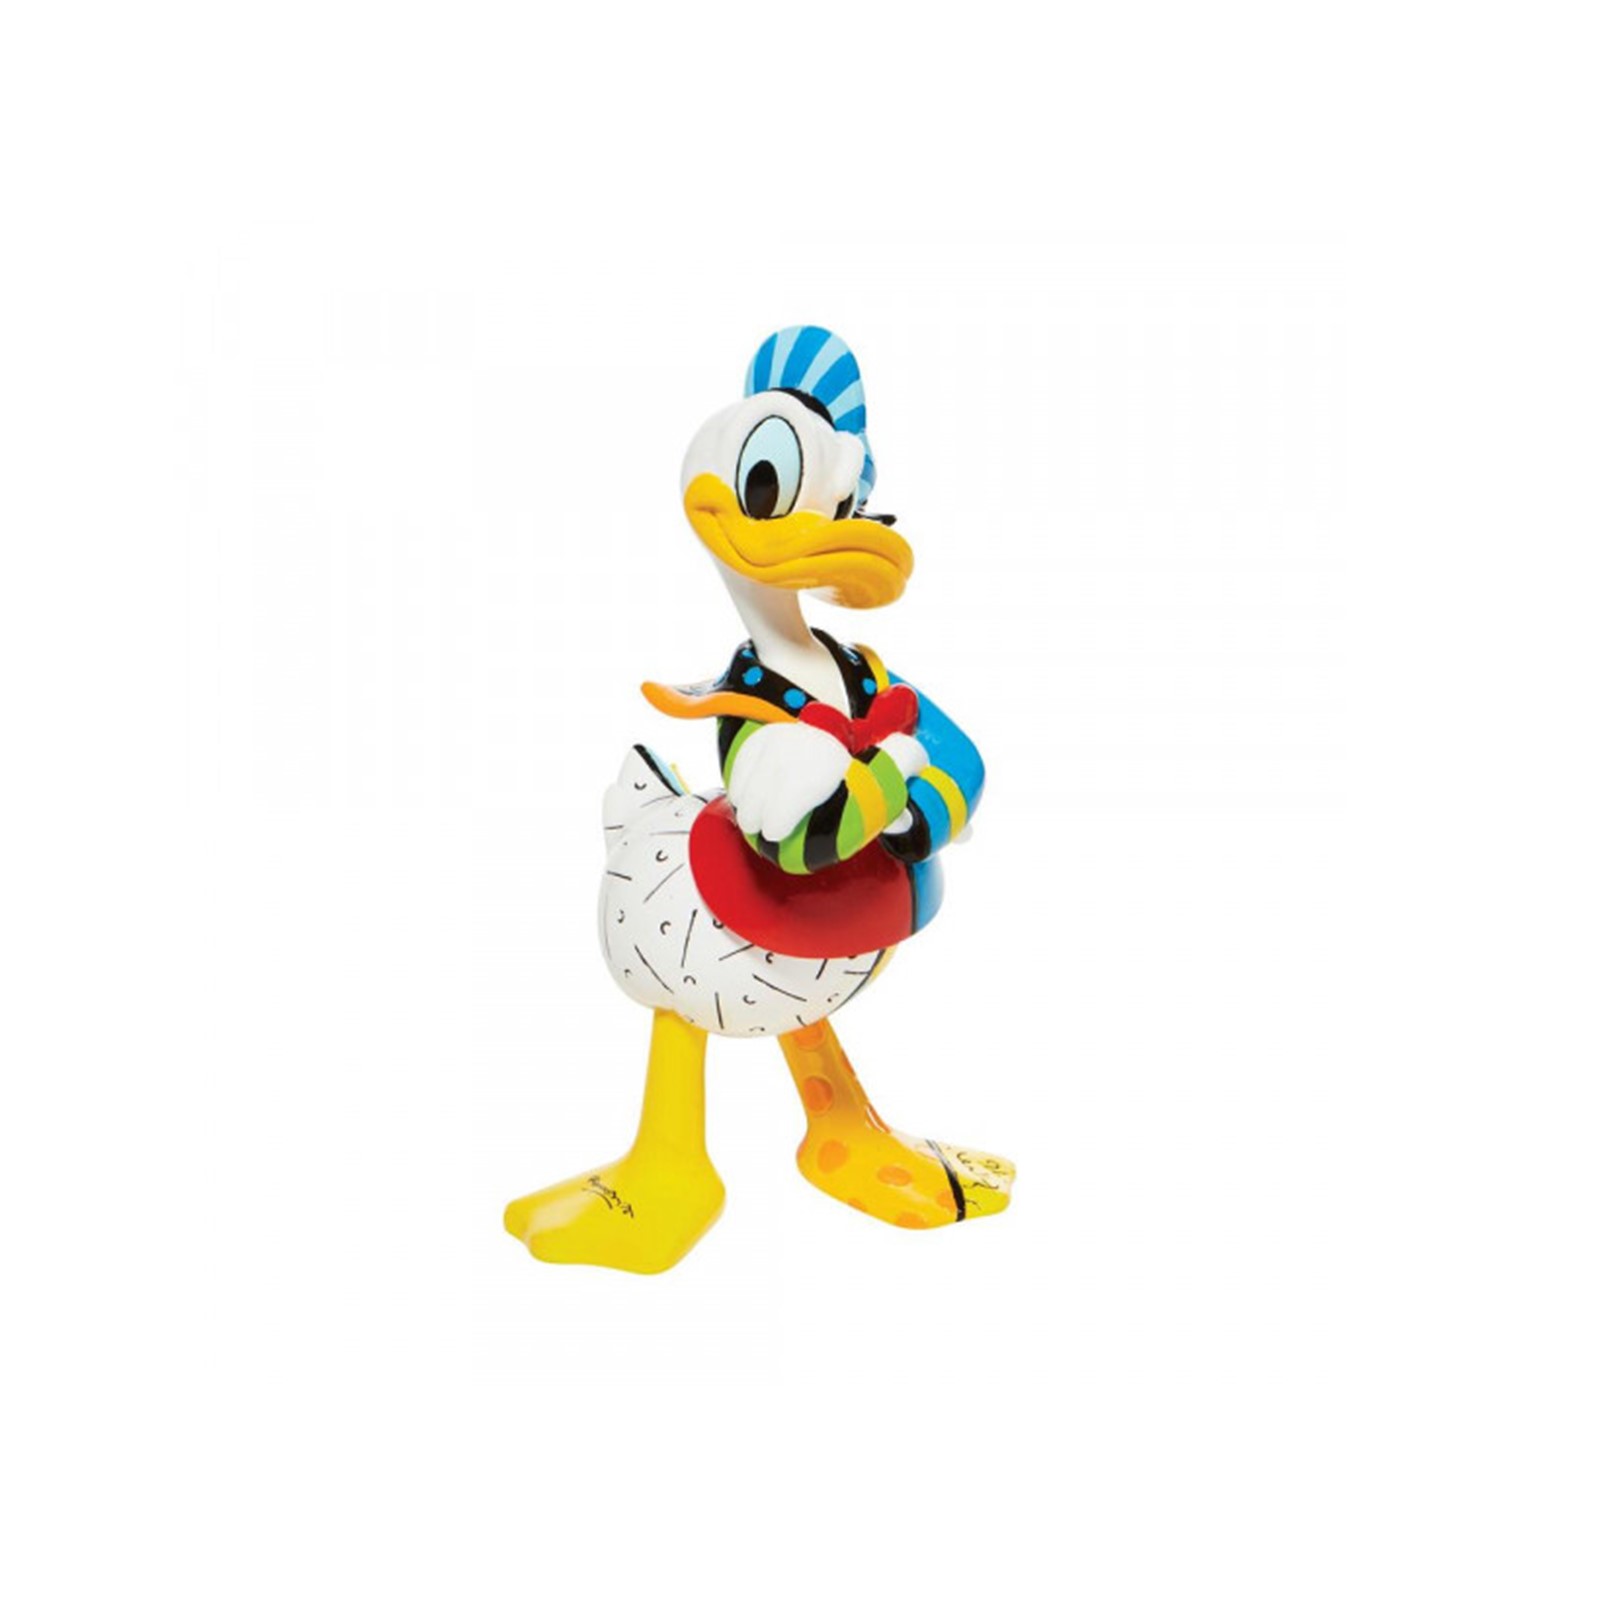 figurine Disney Britto Donald Duck 18cm goodin shop